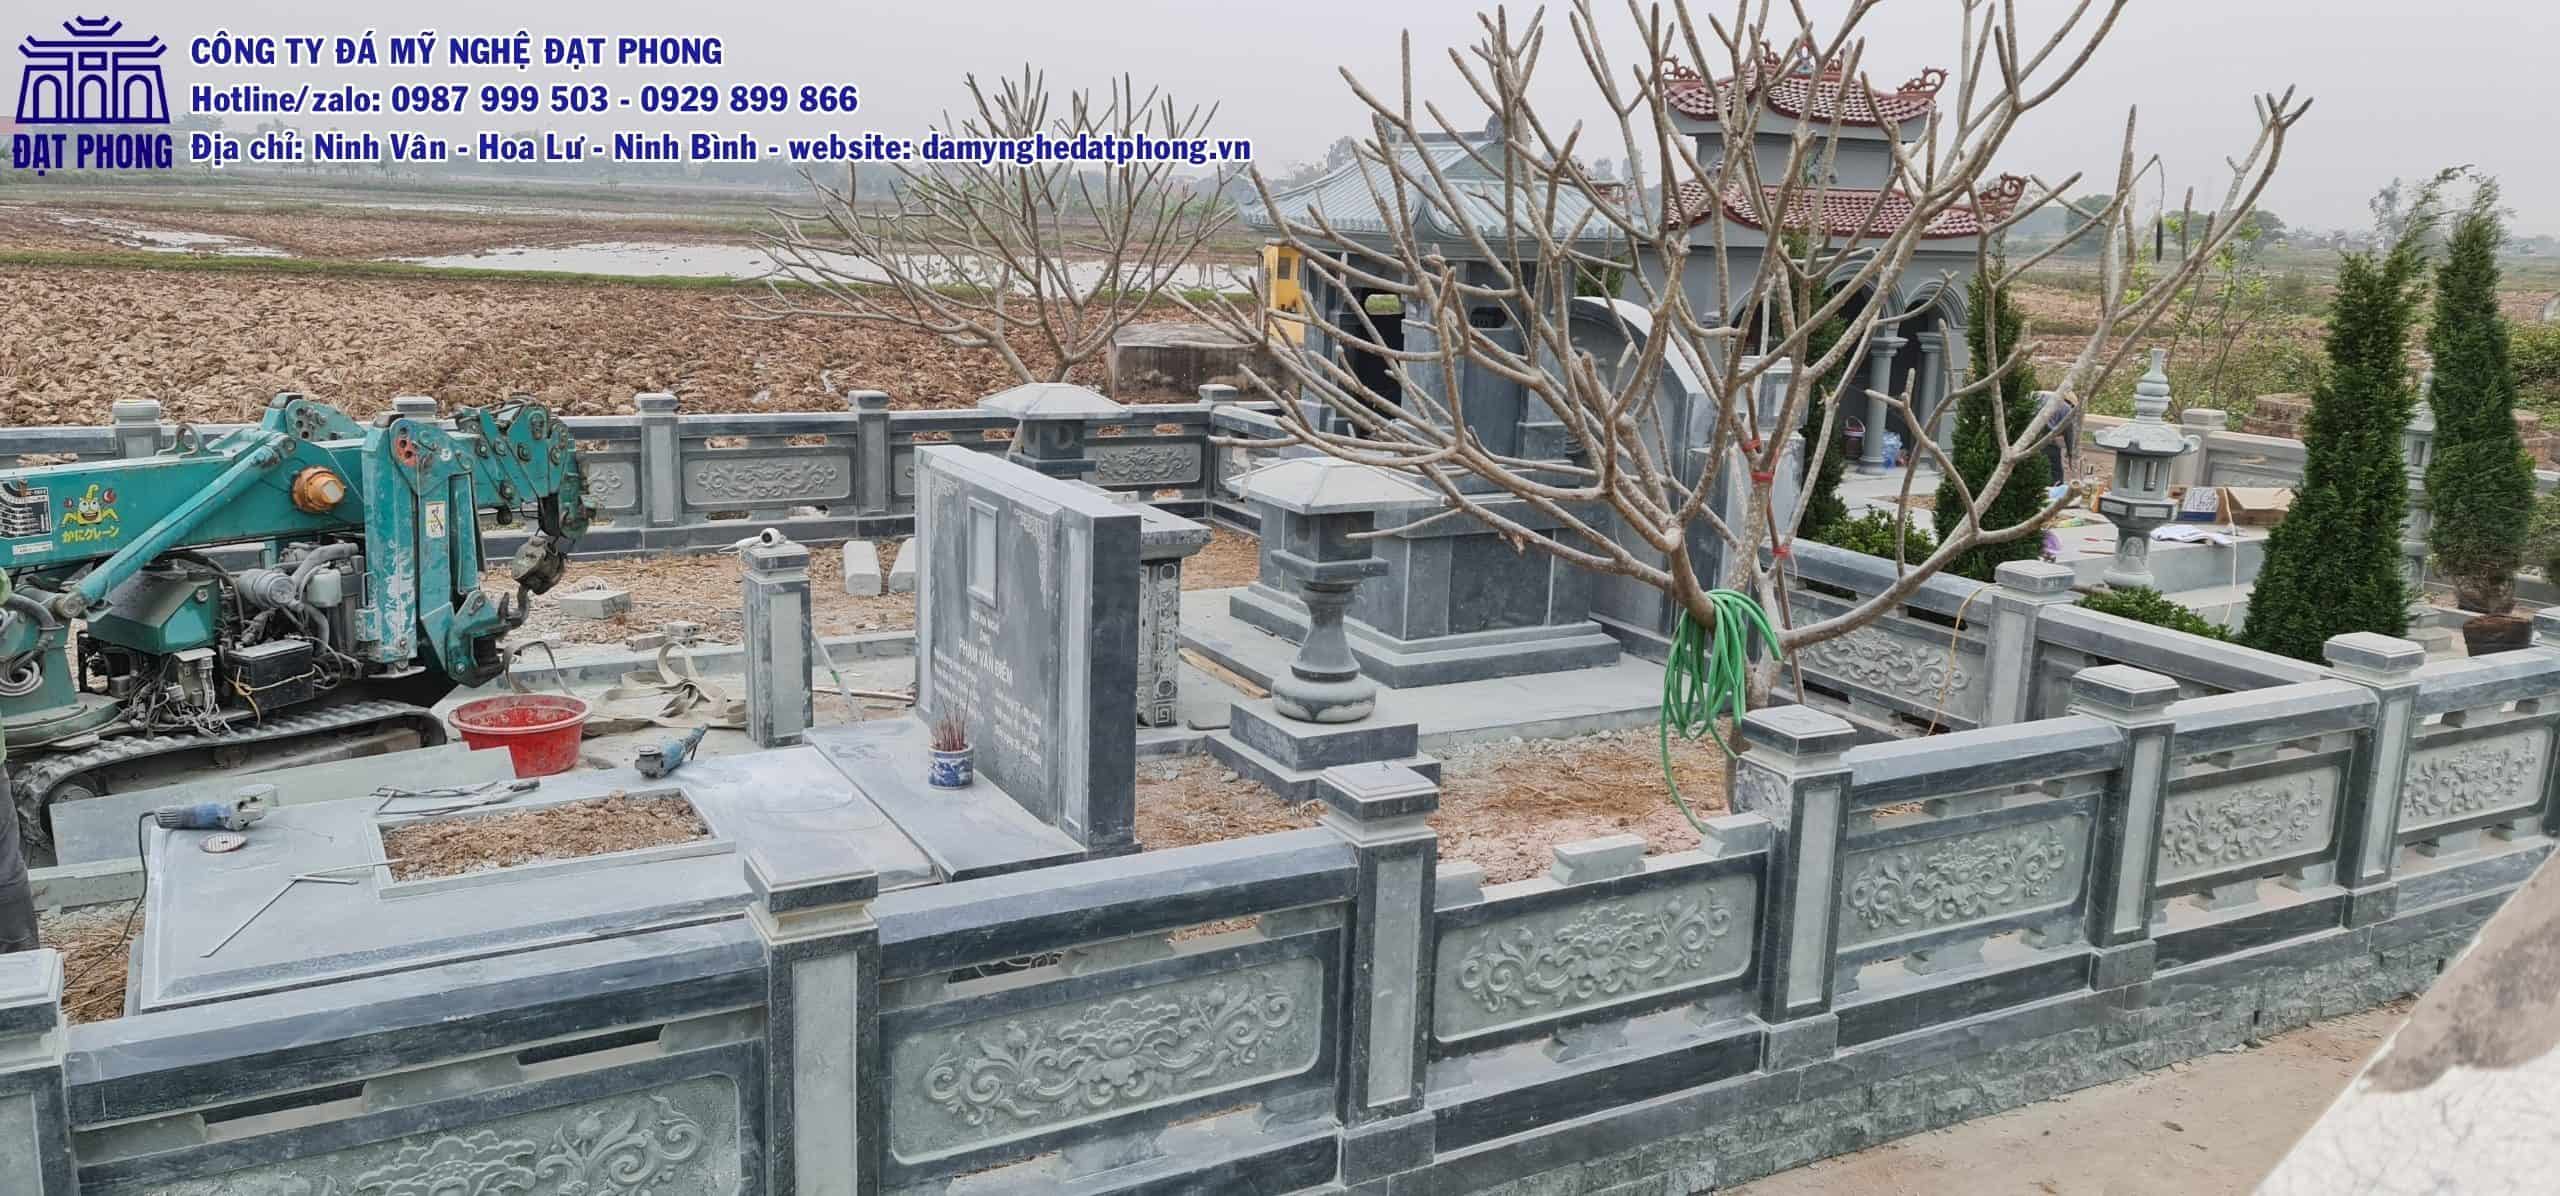 Khu lăng mộ đá xanh rêu tại Nghệ An